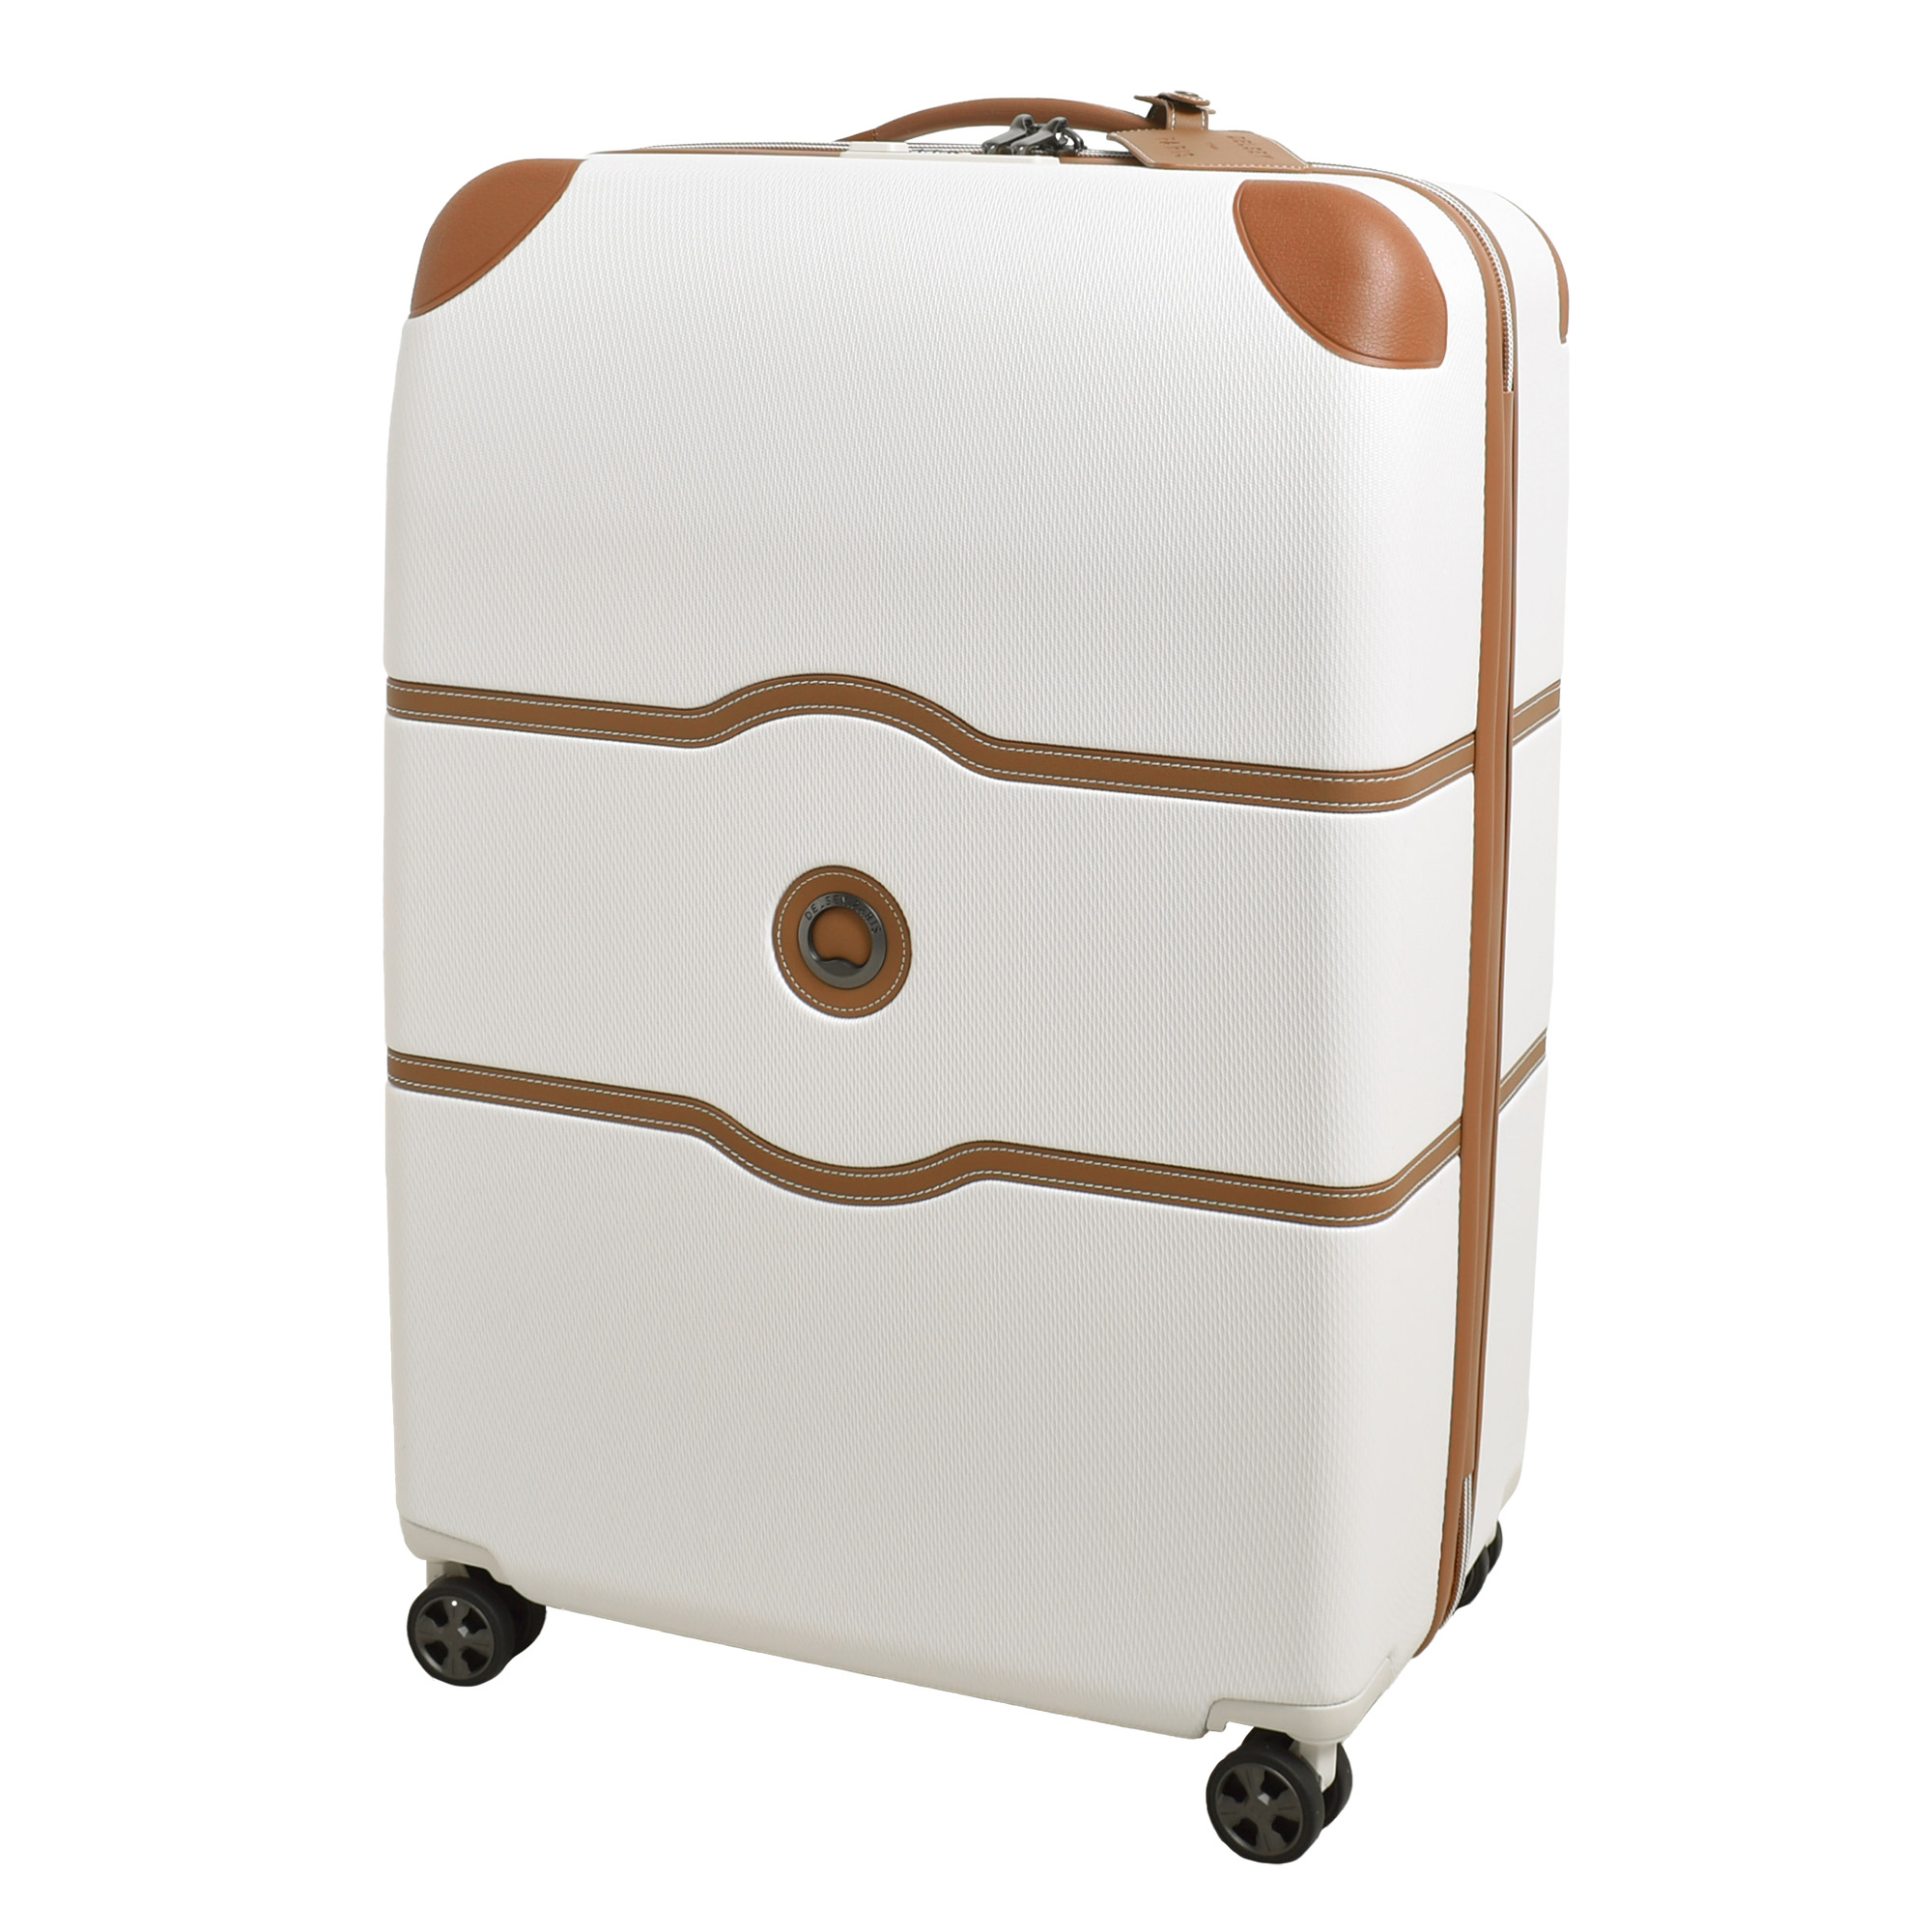 デルセー スーツケース メンズ レディース DELSEY 001676821 ホワイト 白 ブラウン...